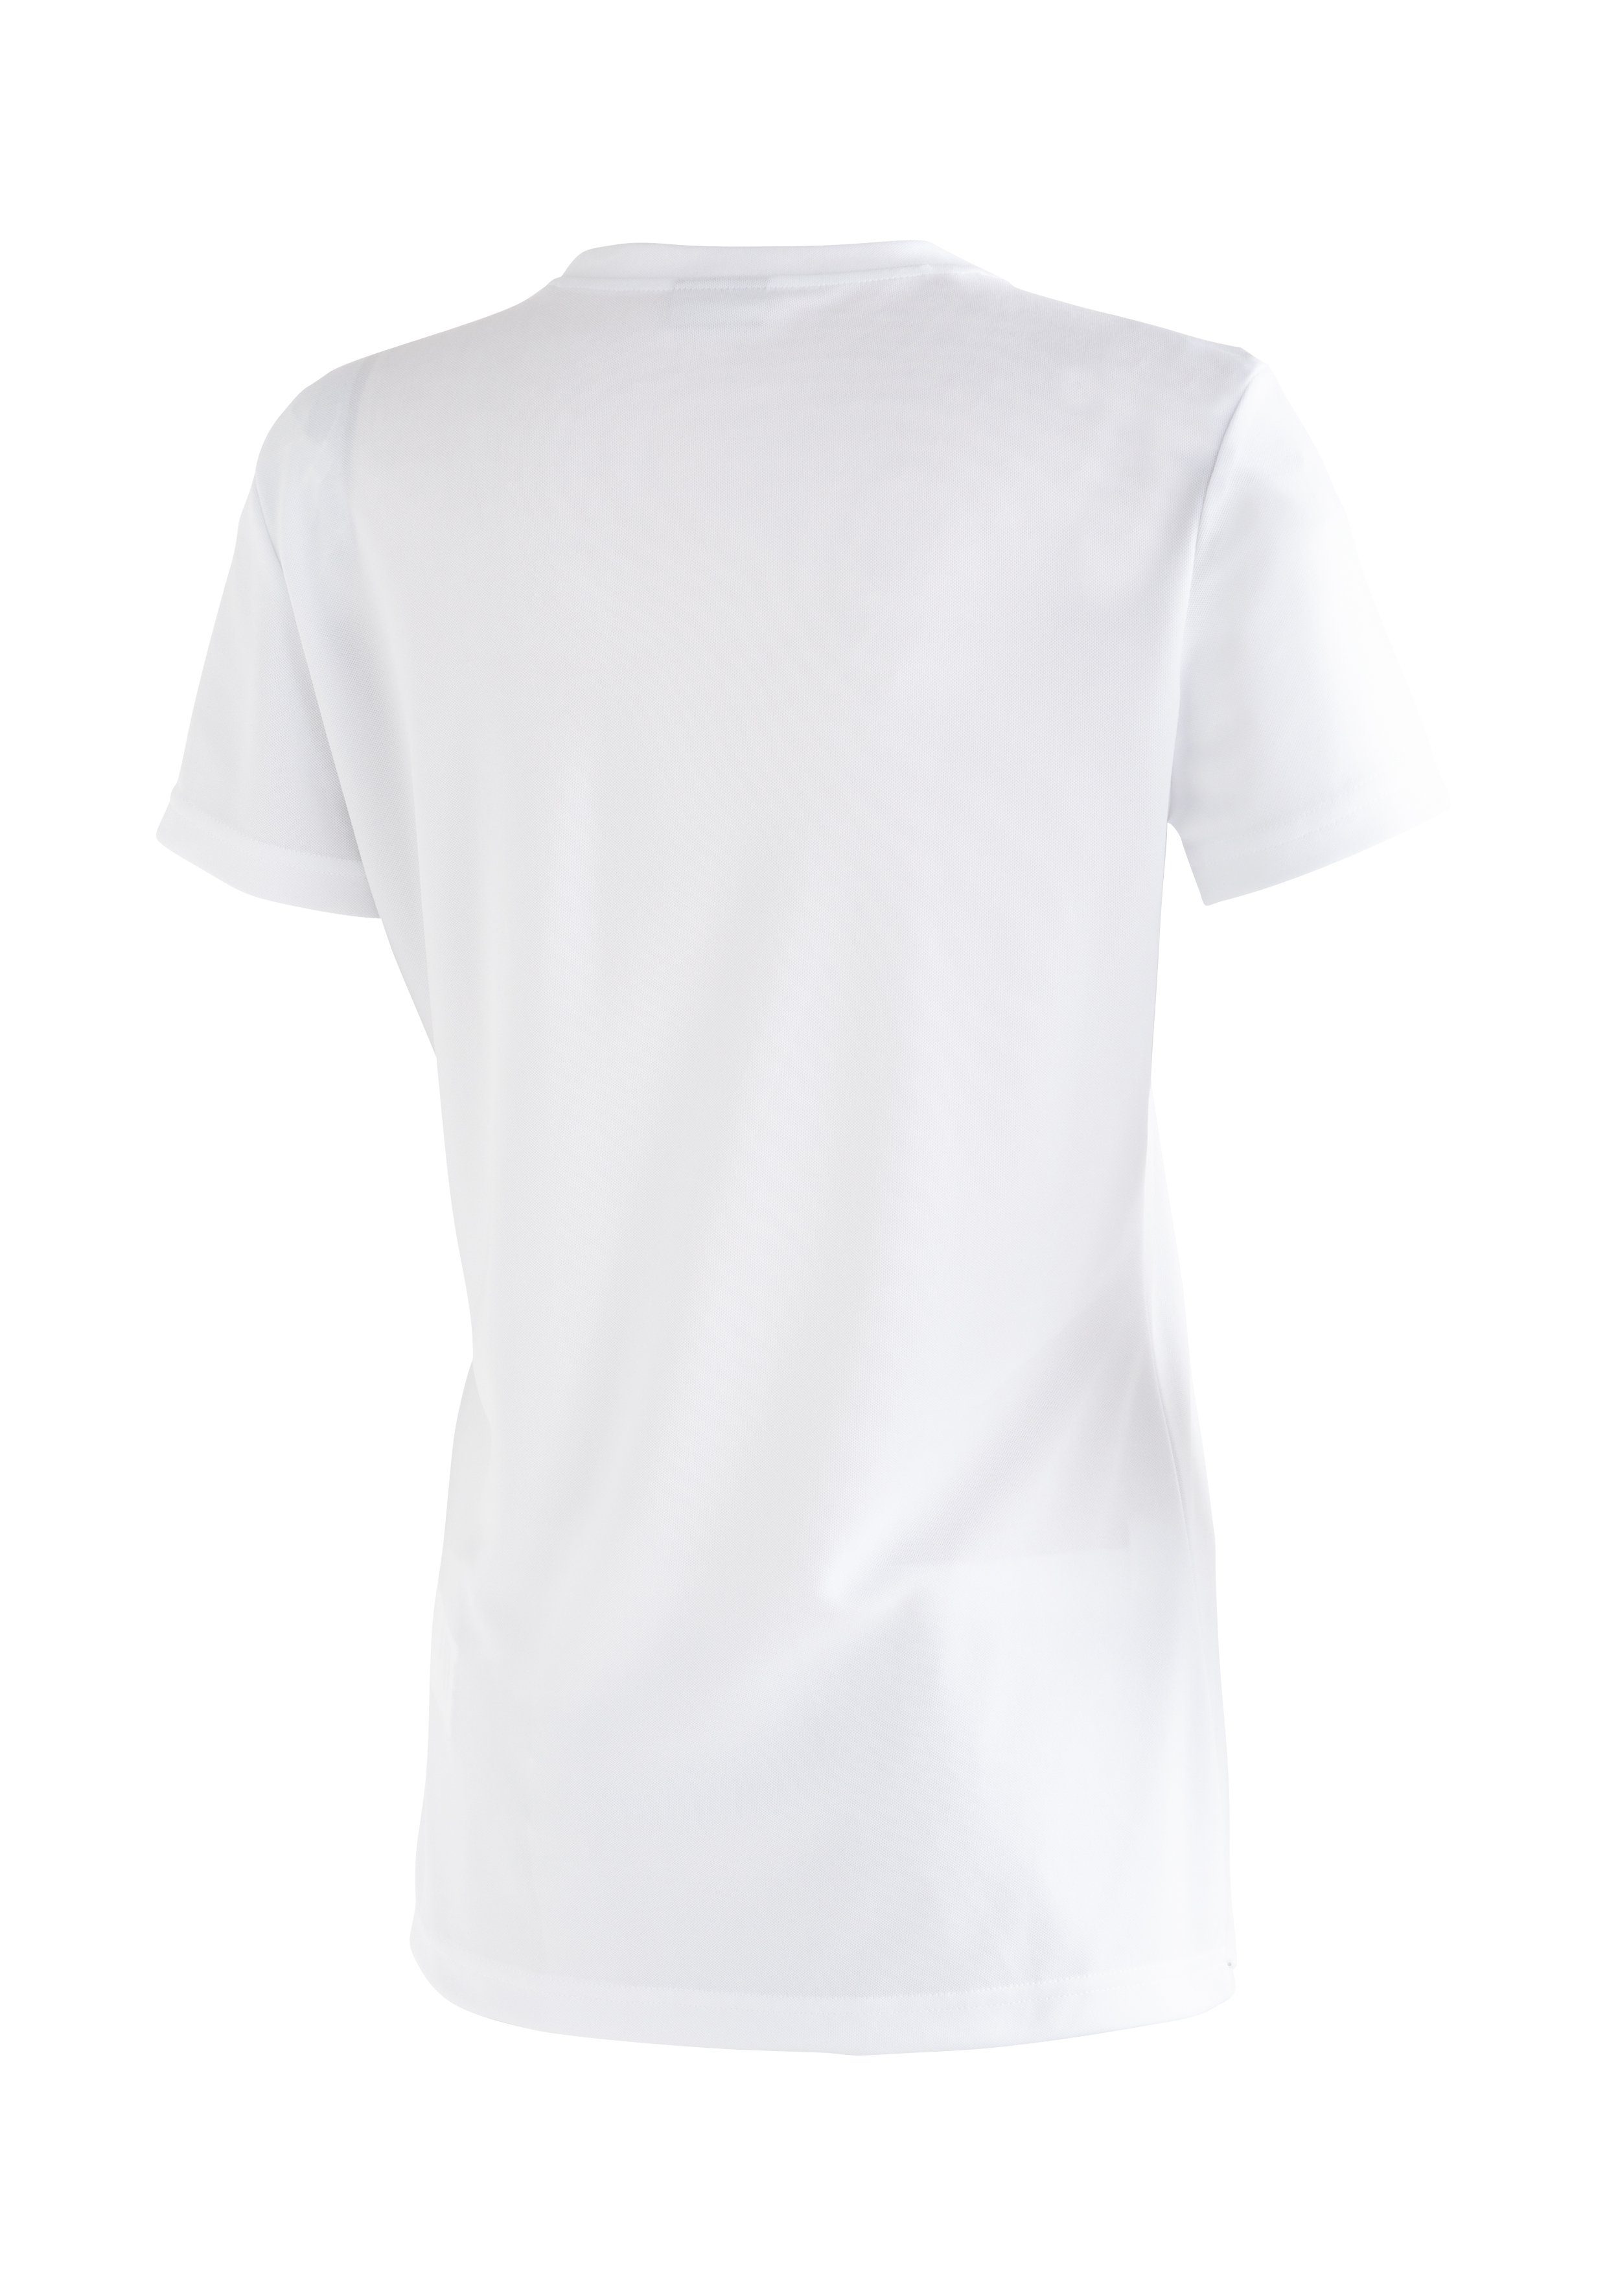 Maier Sports Funktionsshirt mit Passformstabilität vielseitiges Waltraut Print weiß Funktional T-Shirt hoher